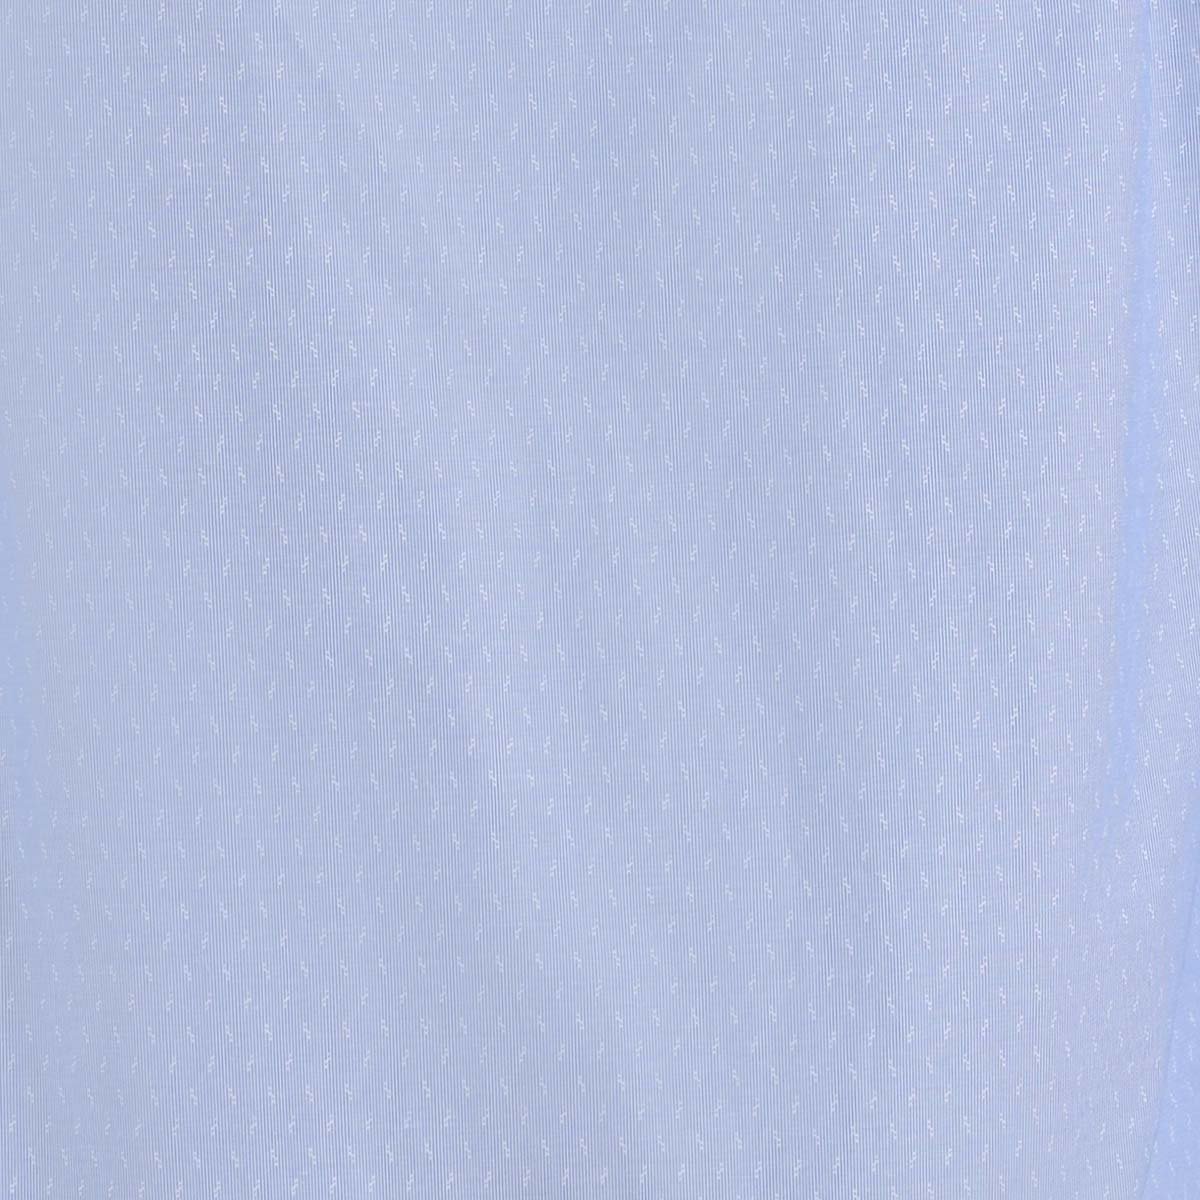 Camisa Rayas Manga Larga Azul Altamar para Caballero